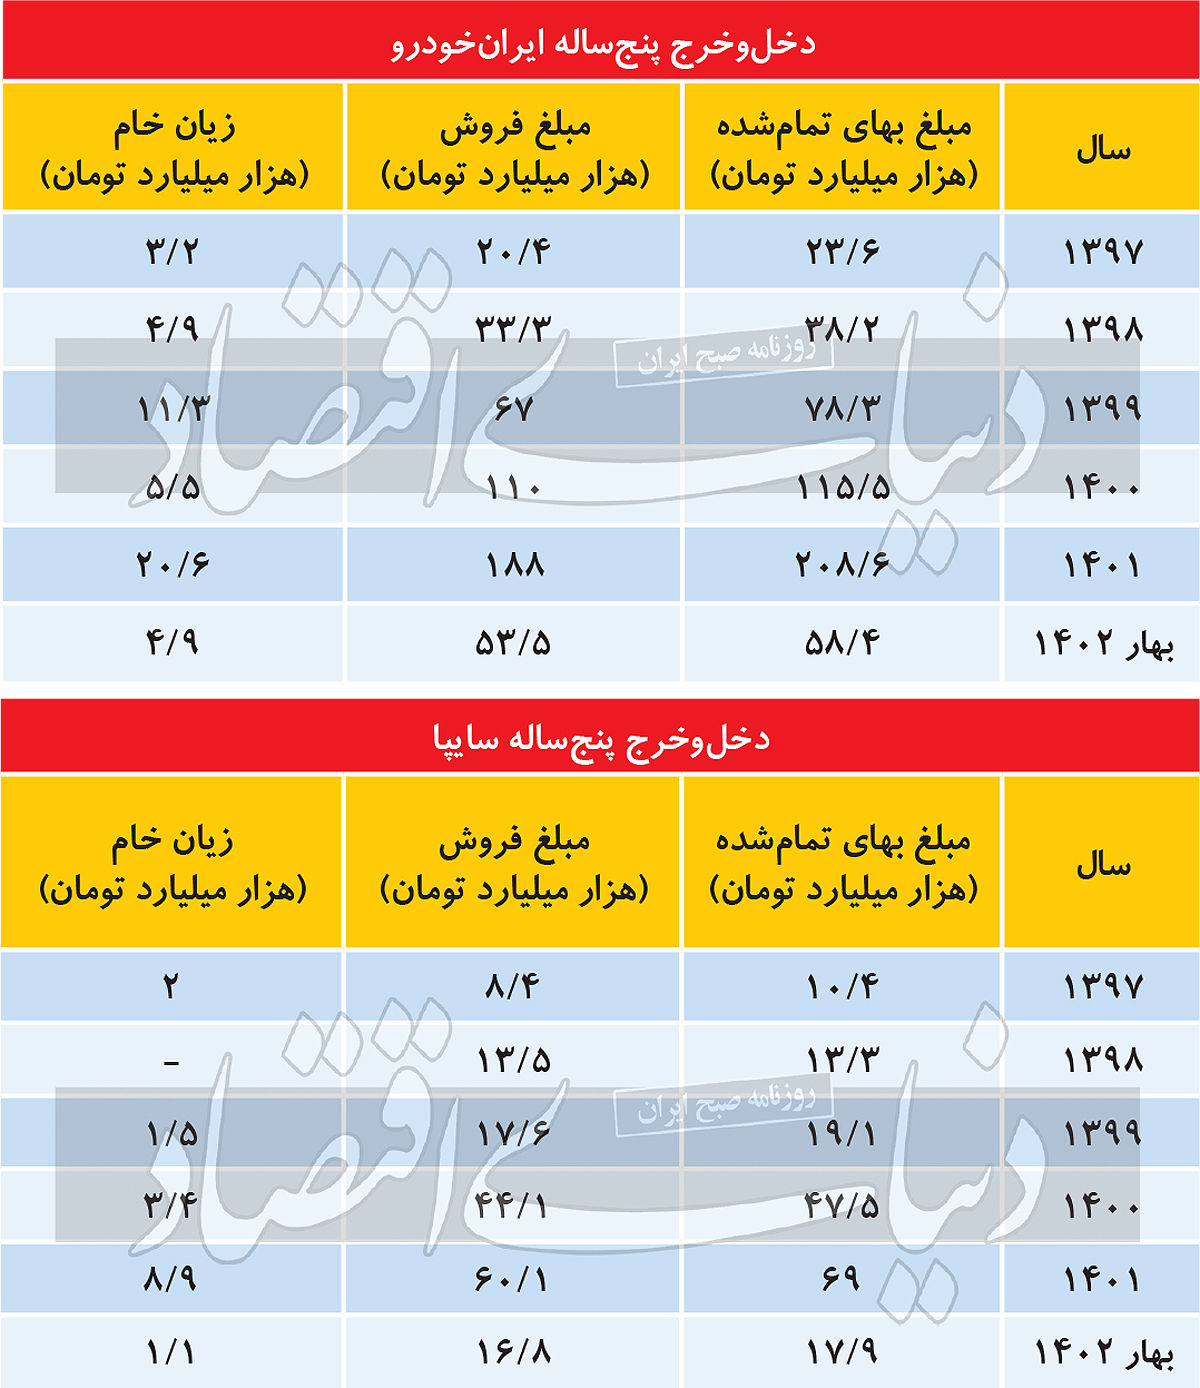 ایران خودرو و سایپا در 5سال گذشته چقدر زیان داده اند؟